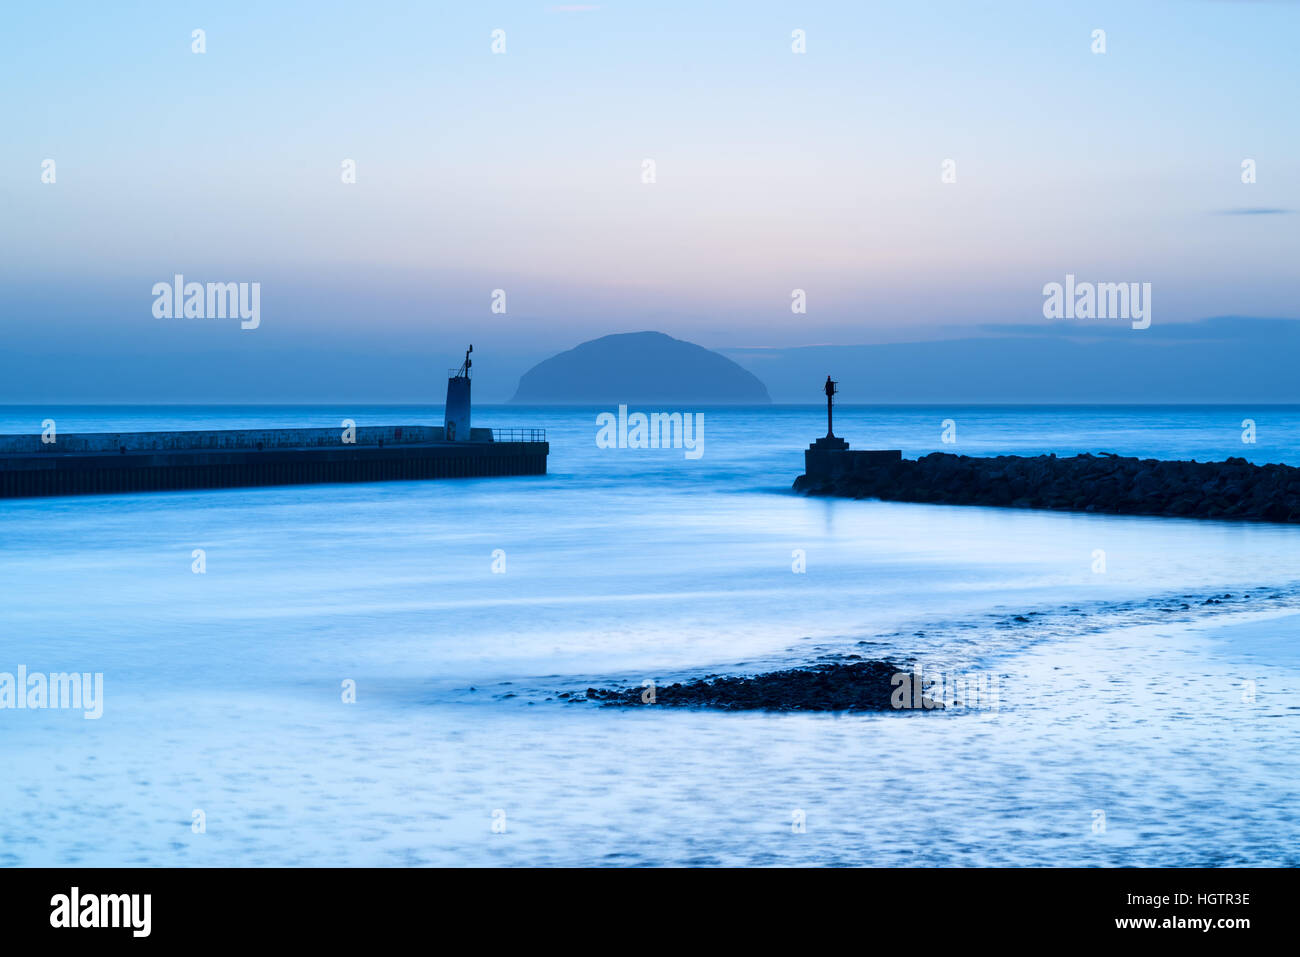 Girvan Hafen Abend mit Ailsa Craig Insel in Ferne Blick auf Firth von Clyde, South Ayrshire, Schottland, Großbritannien Stockfoto